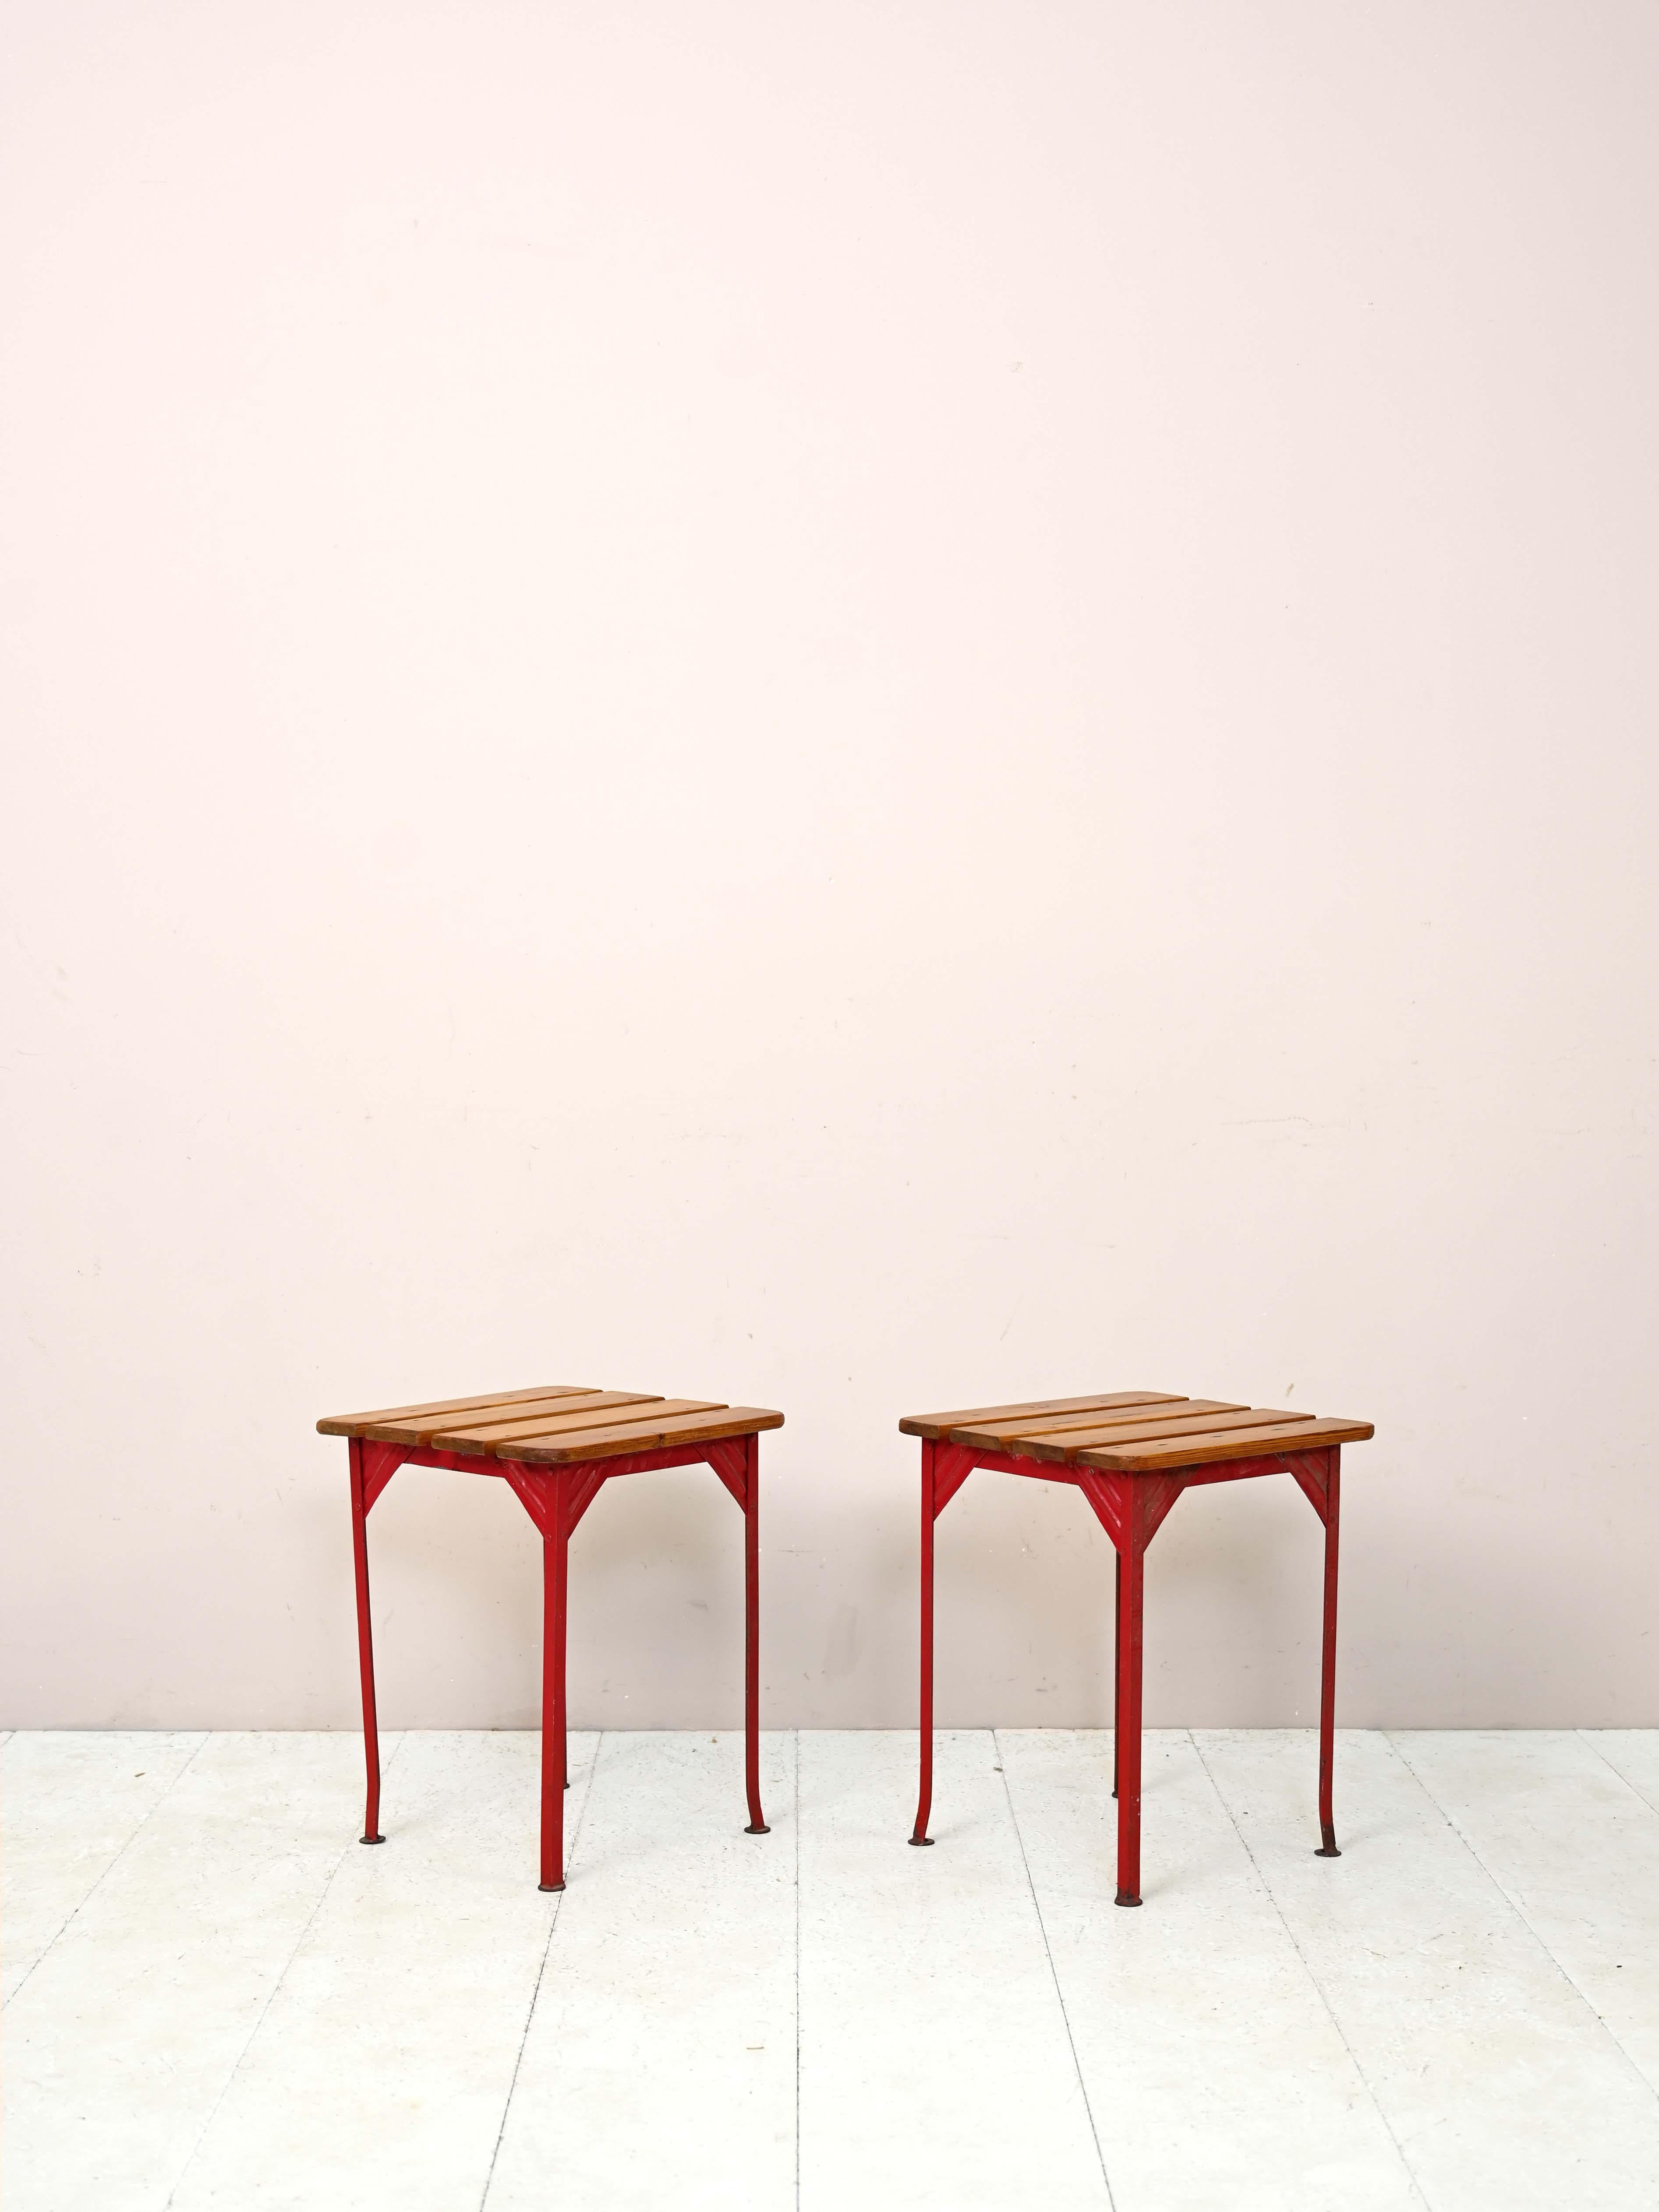 Skandinavische Vintage-Hocker.

Ein Paar Hocker im Industriestil mit einem rot lackierten Metallrahmen und Sitzflächen aus Holzlatten.

Sie können auch als Tische oder Nachttische verwendet werden, um sich in einem eklektischen Stil